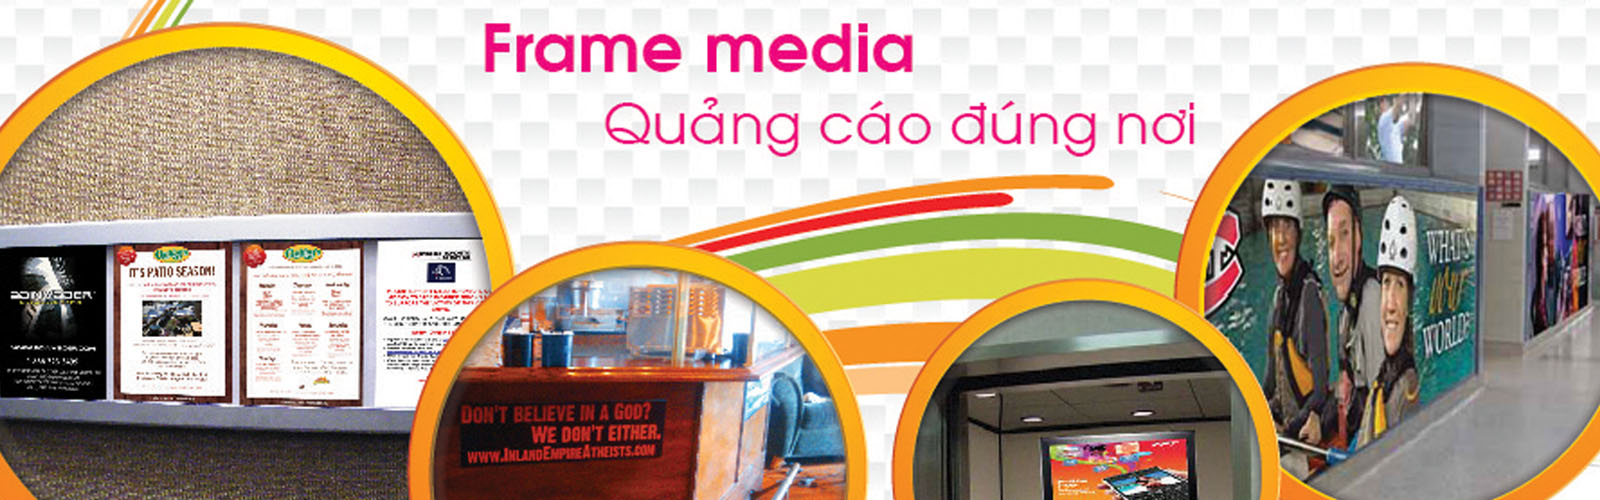 Quang-cao-Frame-media